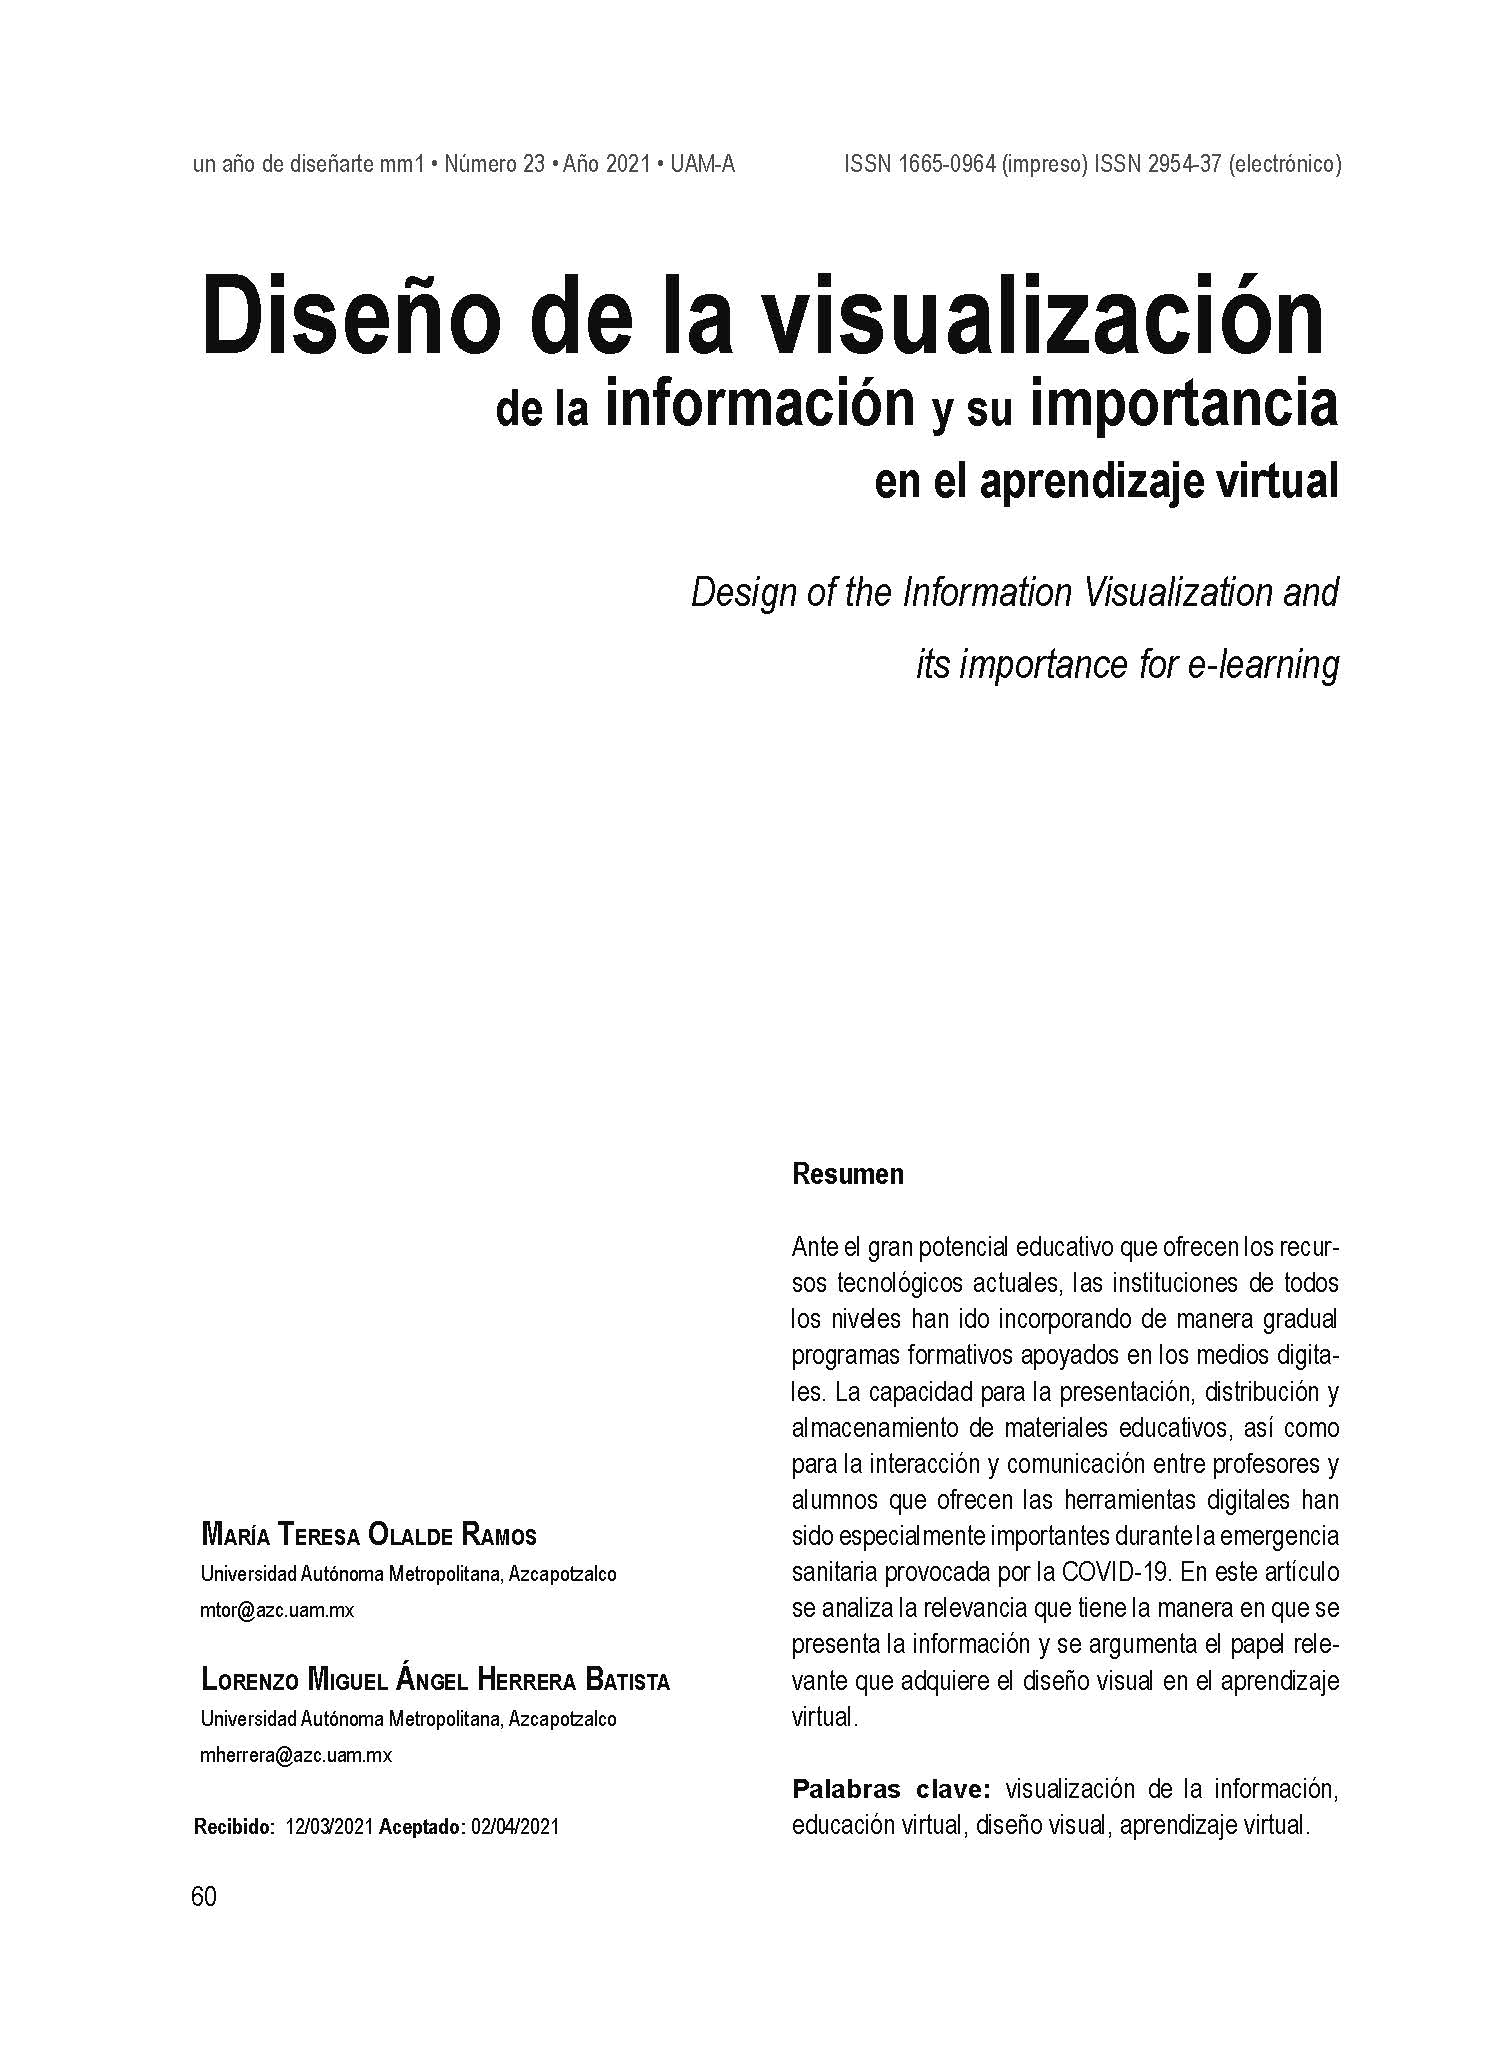 Diseño y visualización de la información